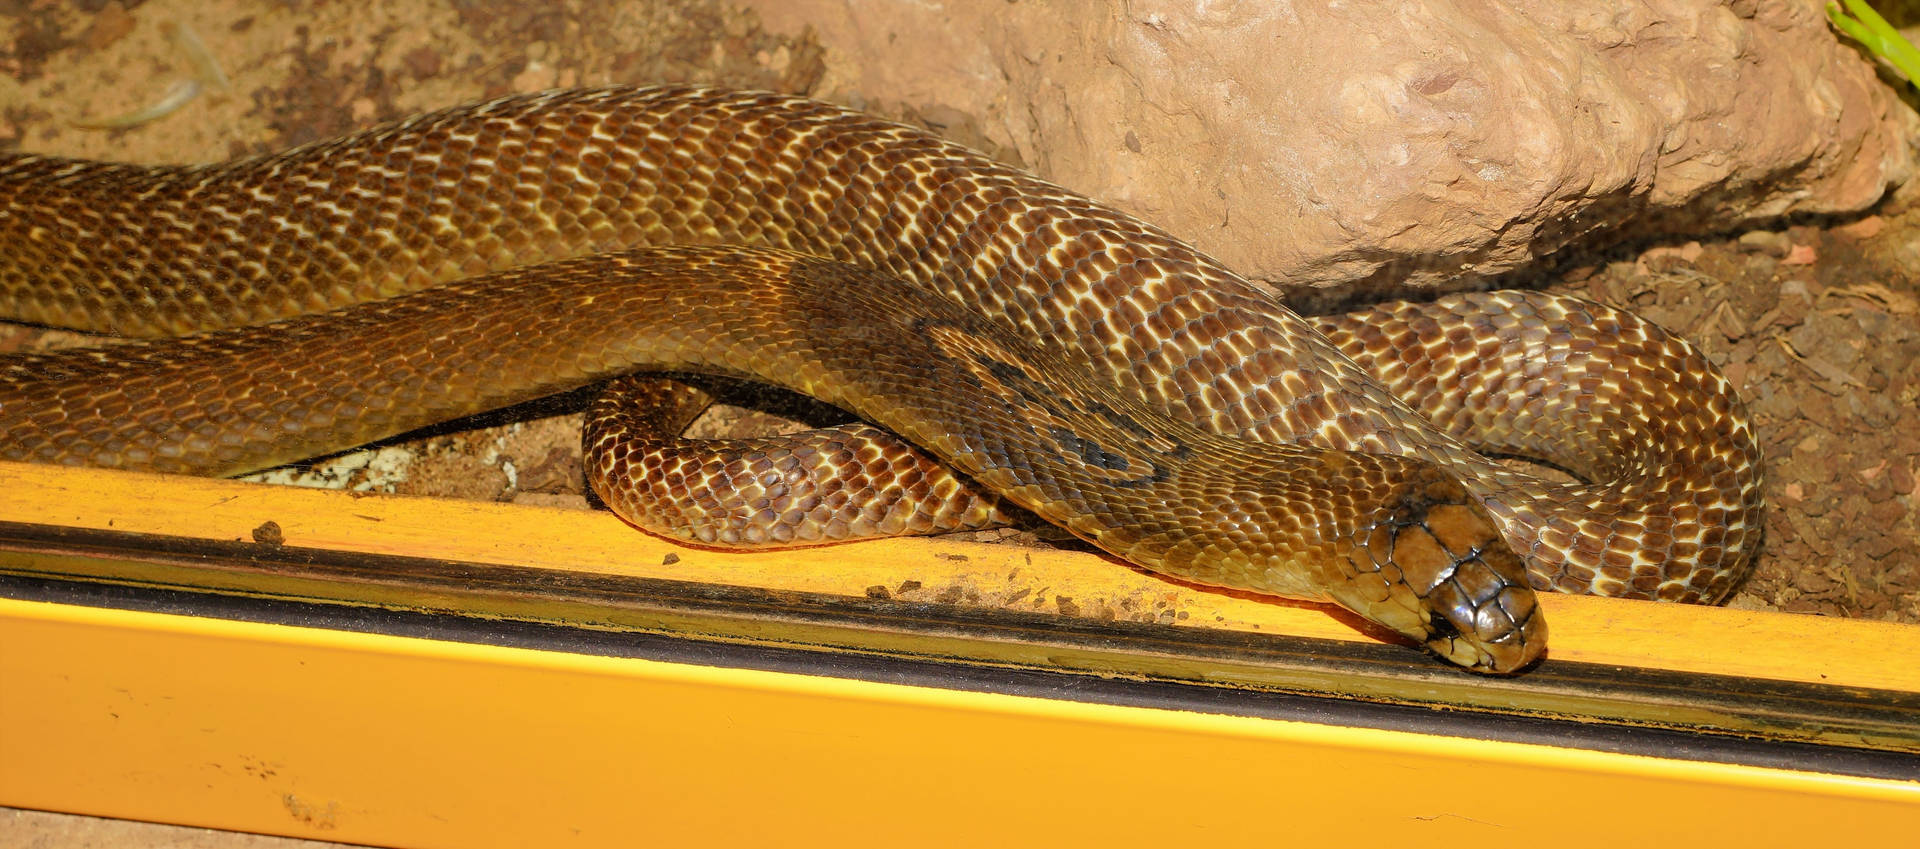 Taipan Snake In Aquarium Background